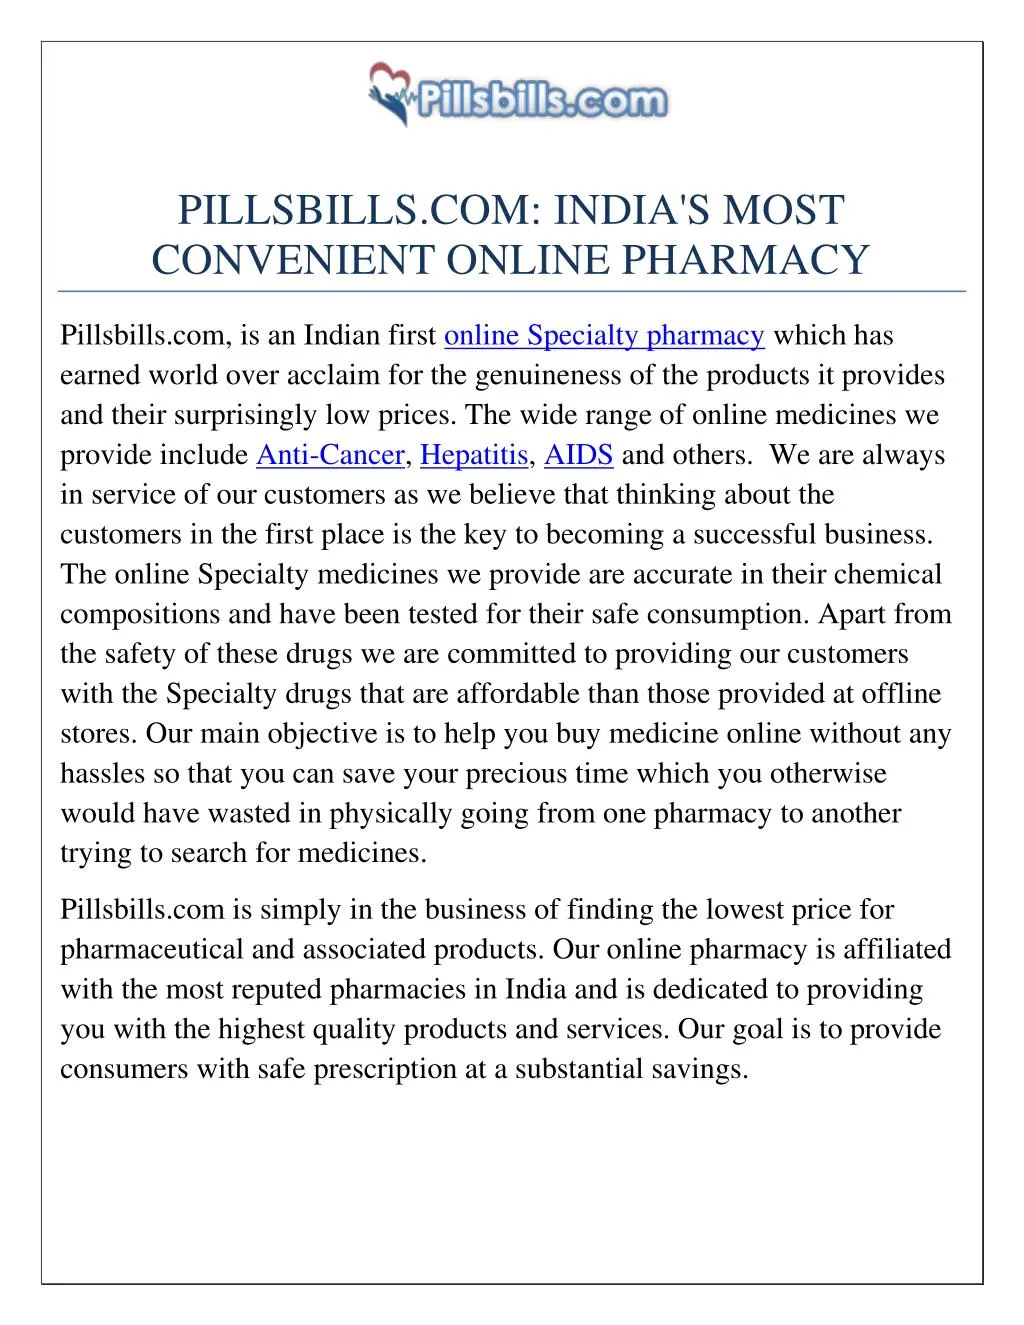 pillsbills com india s most convenient online